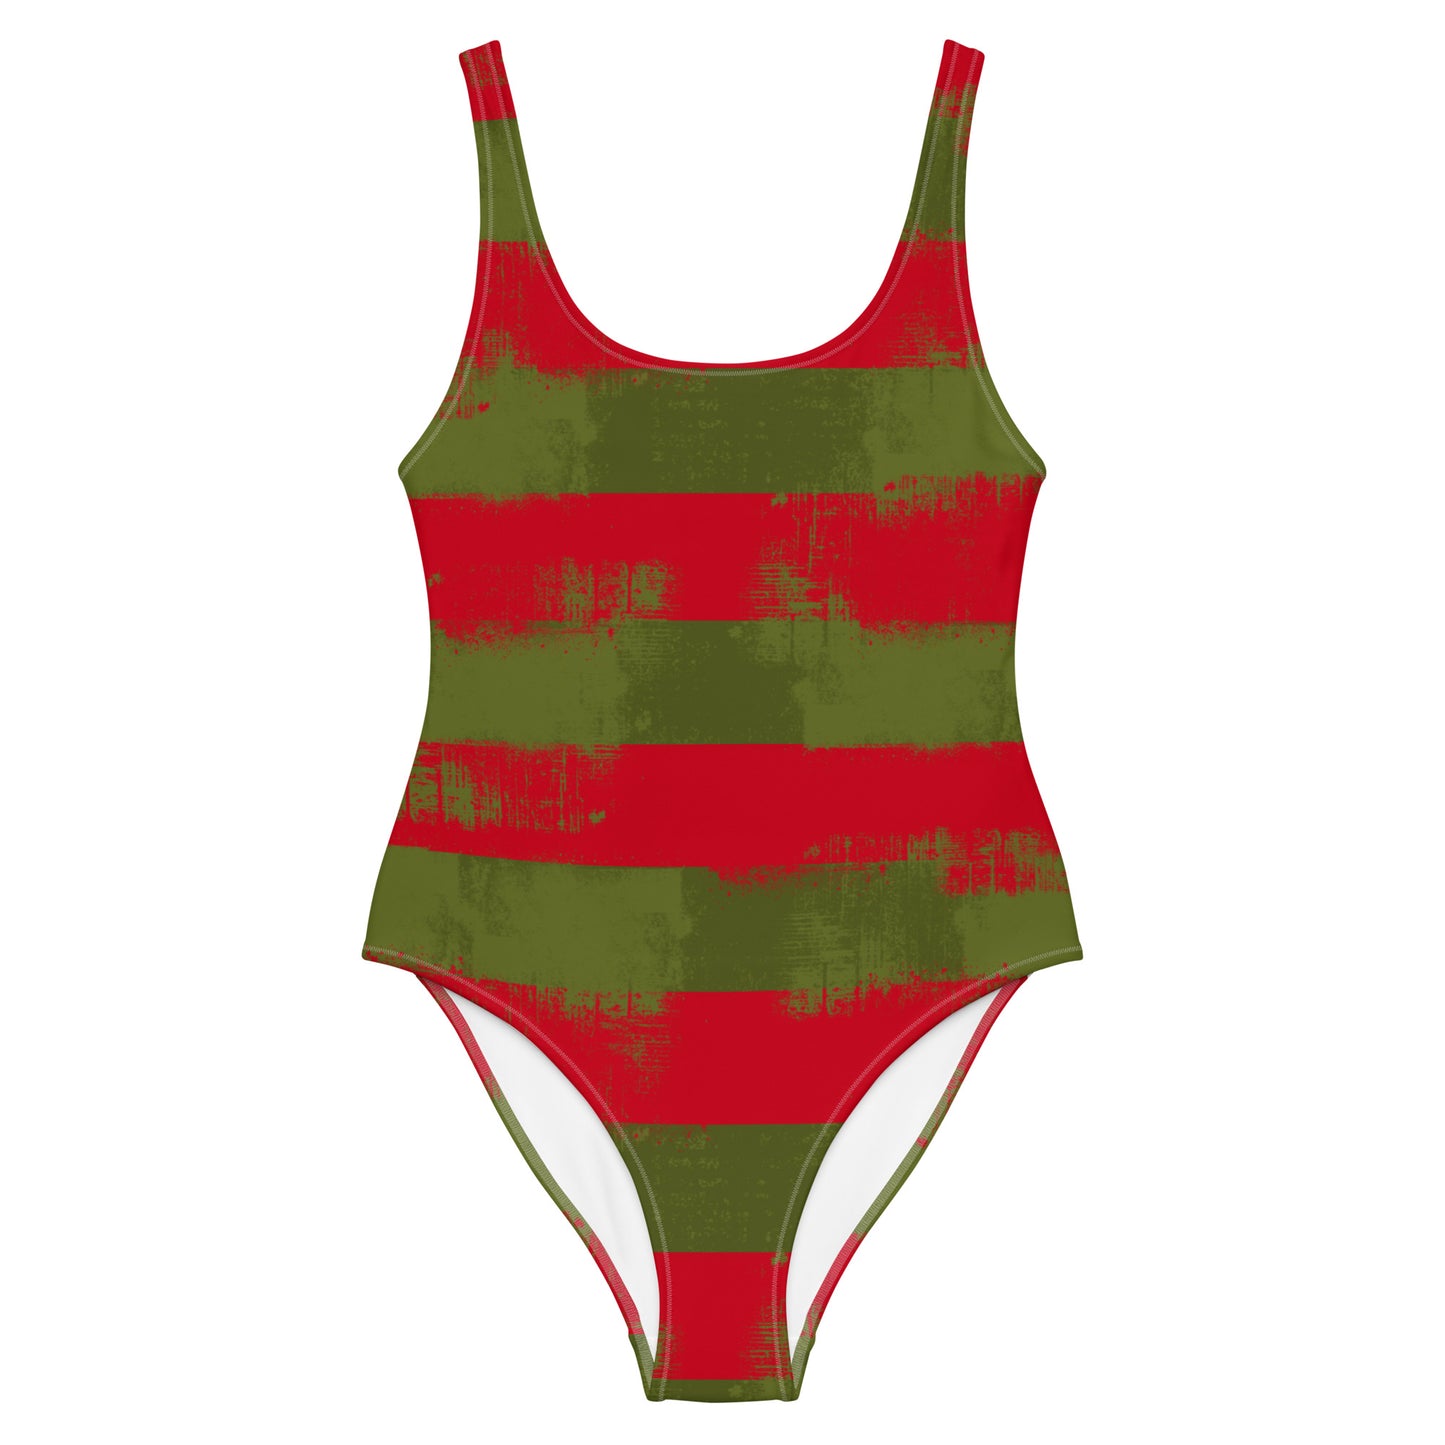 Freddy Krueger Inspired One-Piece Swimsuit